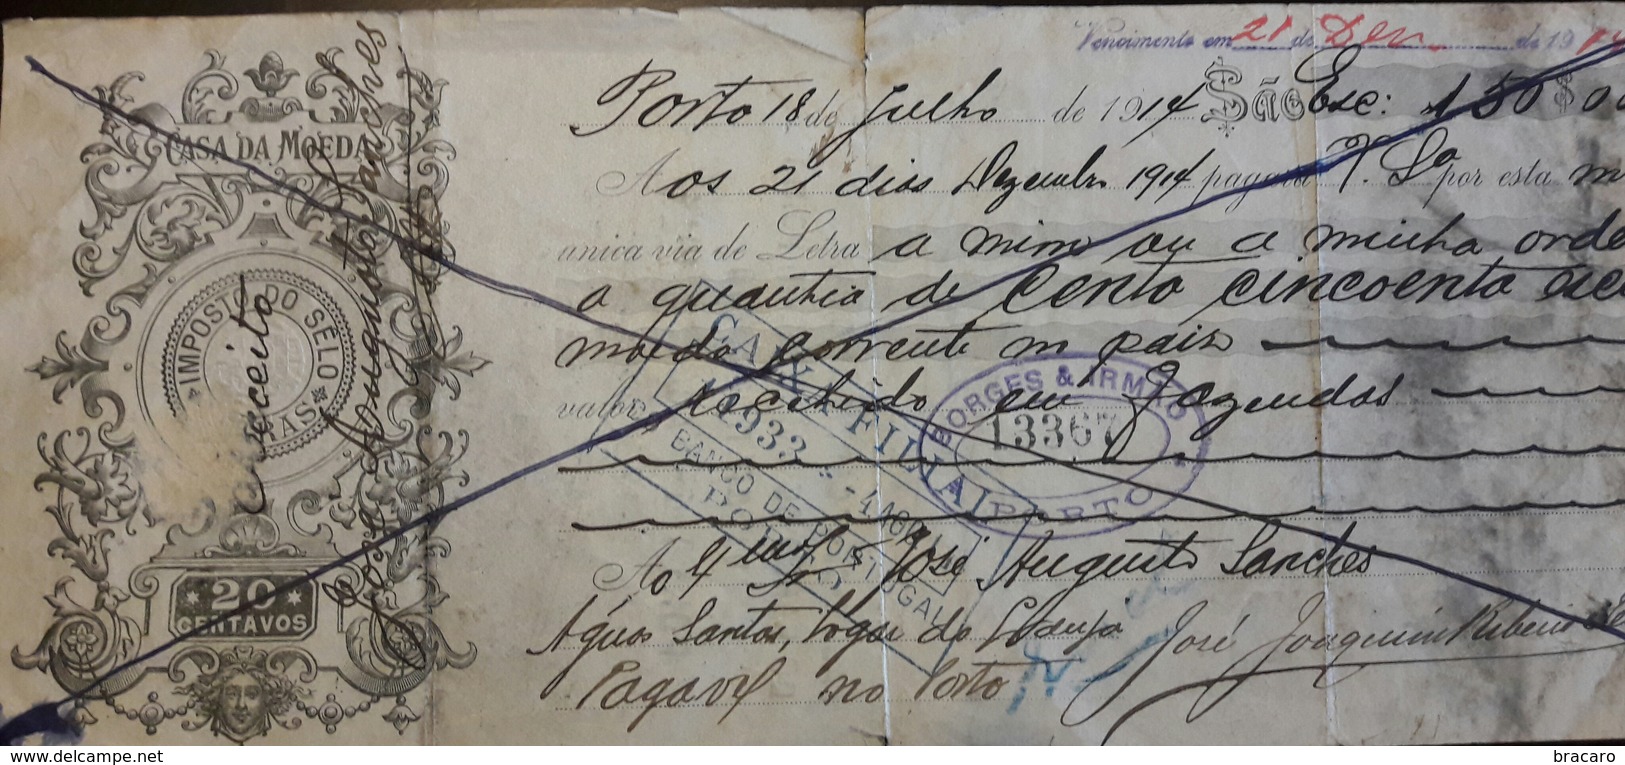 PORTUGAL - Bill Of Exchange / Letra De Câmbio - $20 - 1914 - CAIXA FILIAL DO BANCO DE PORTUGAL PORTO + BORGES & IRMÃO - Wechsel